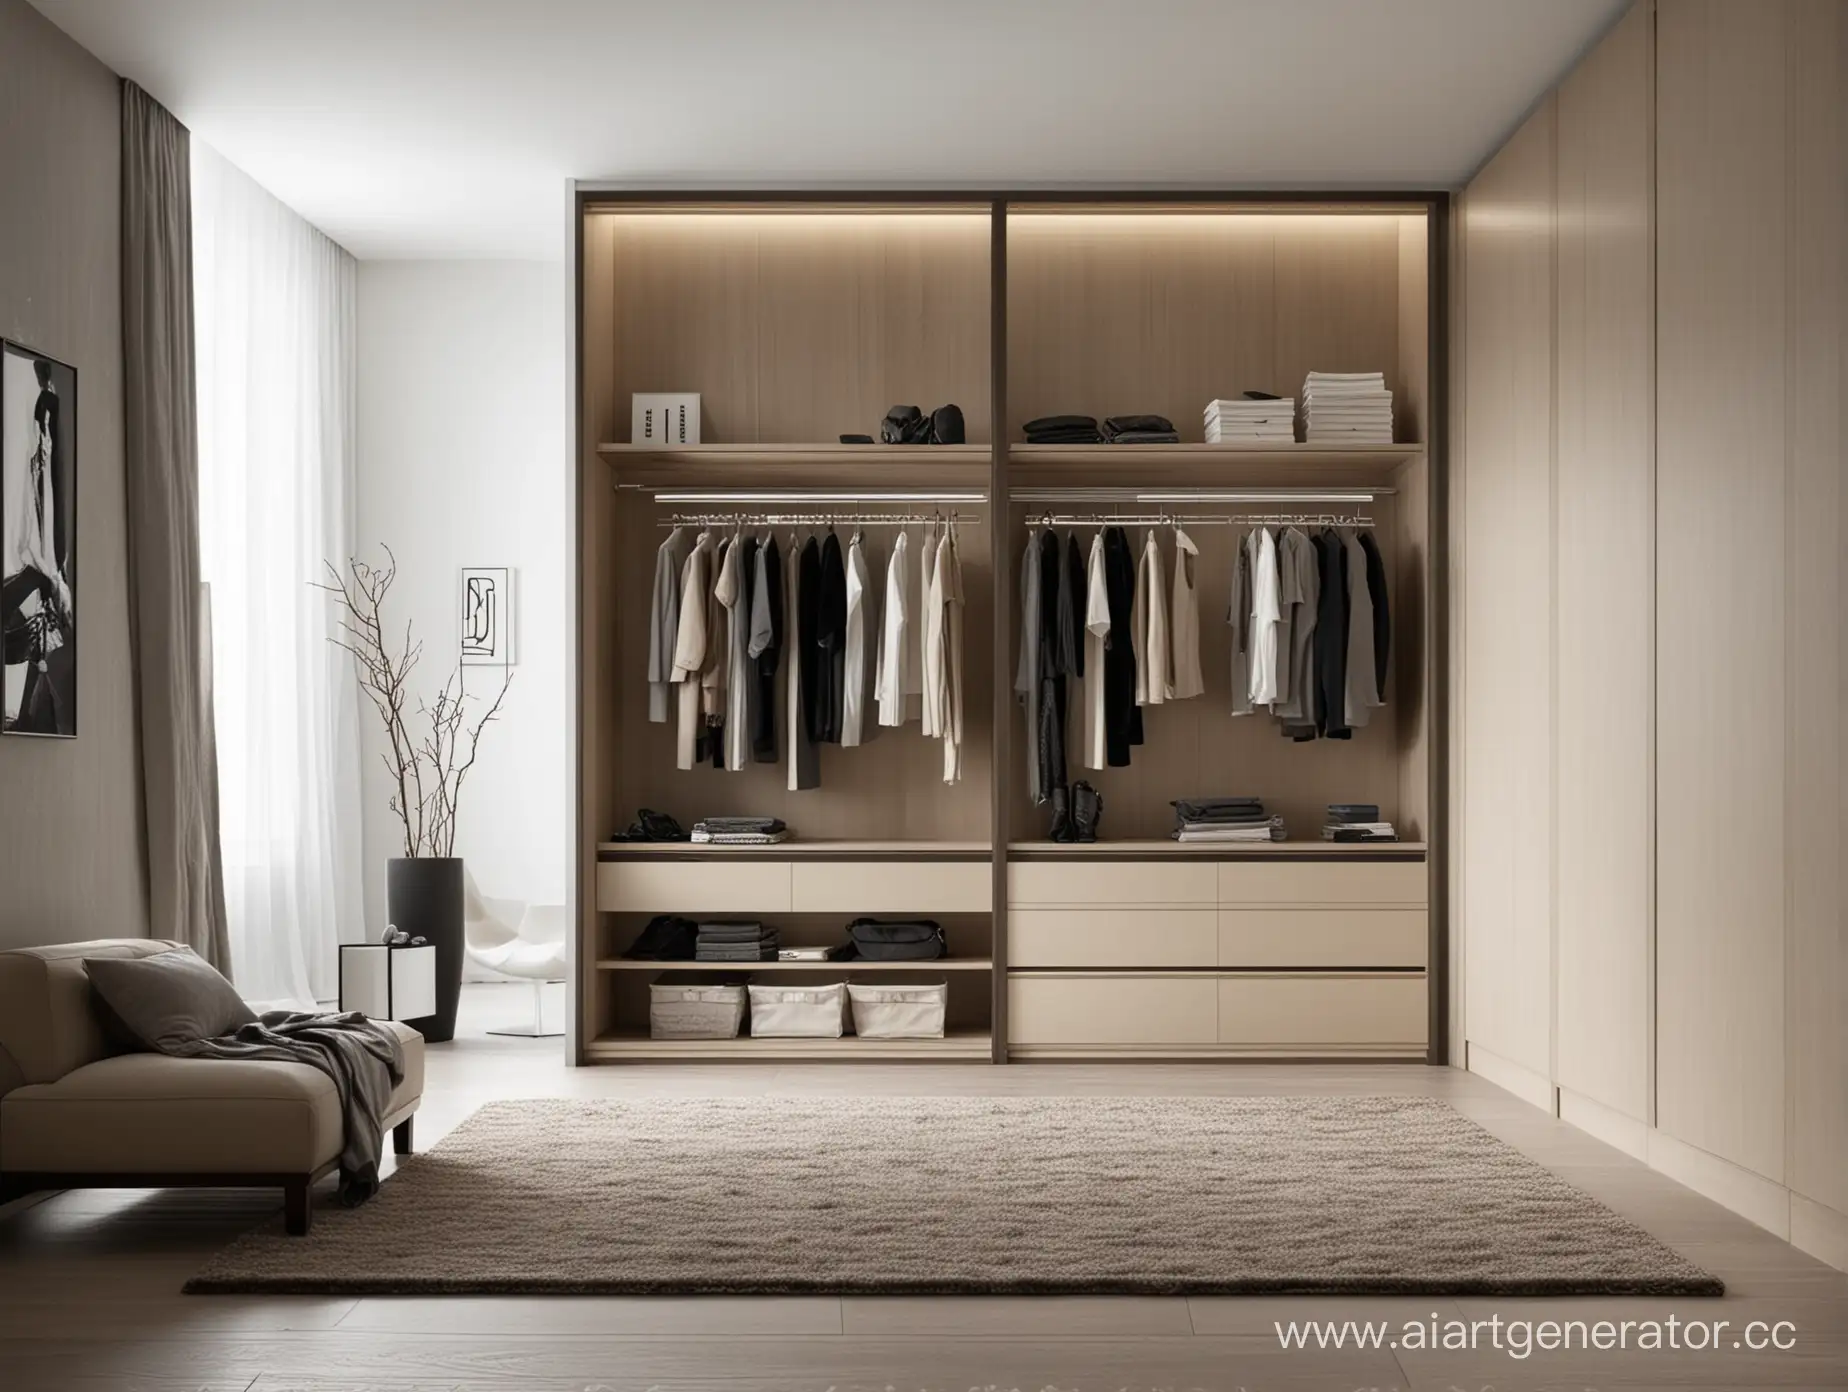 Modern-Style-Wardrobe-Interior-Design